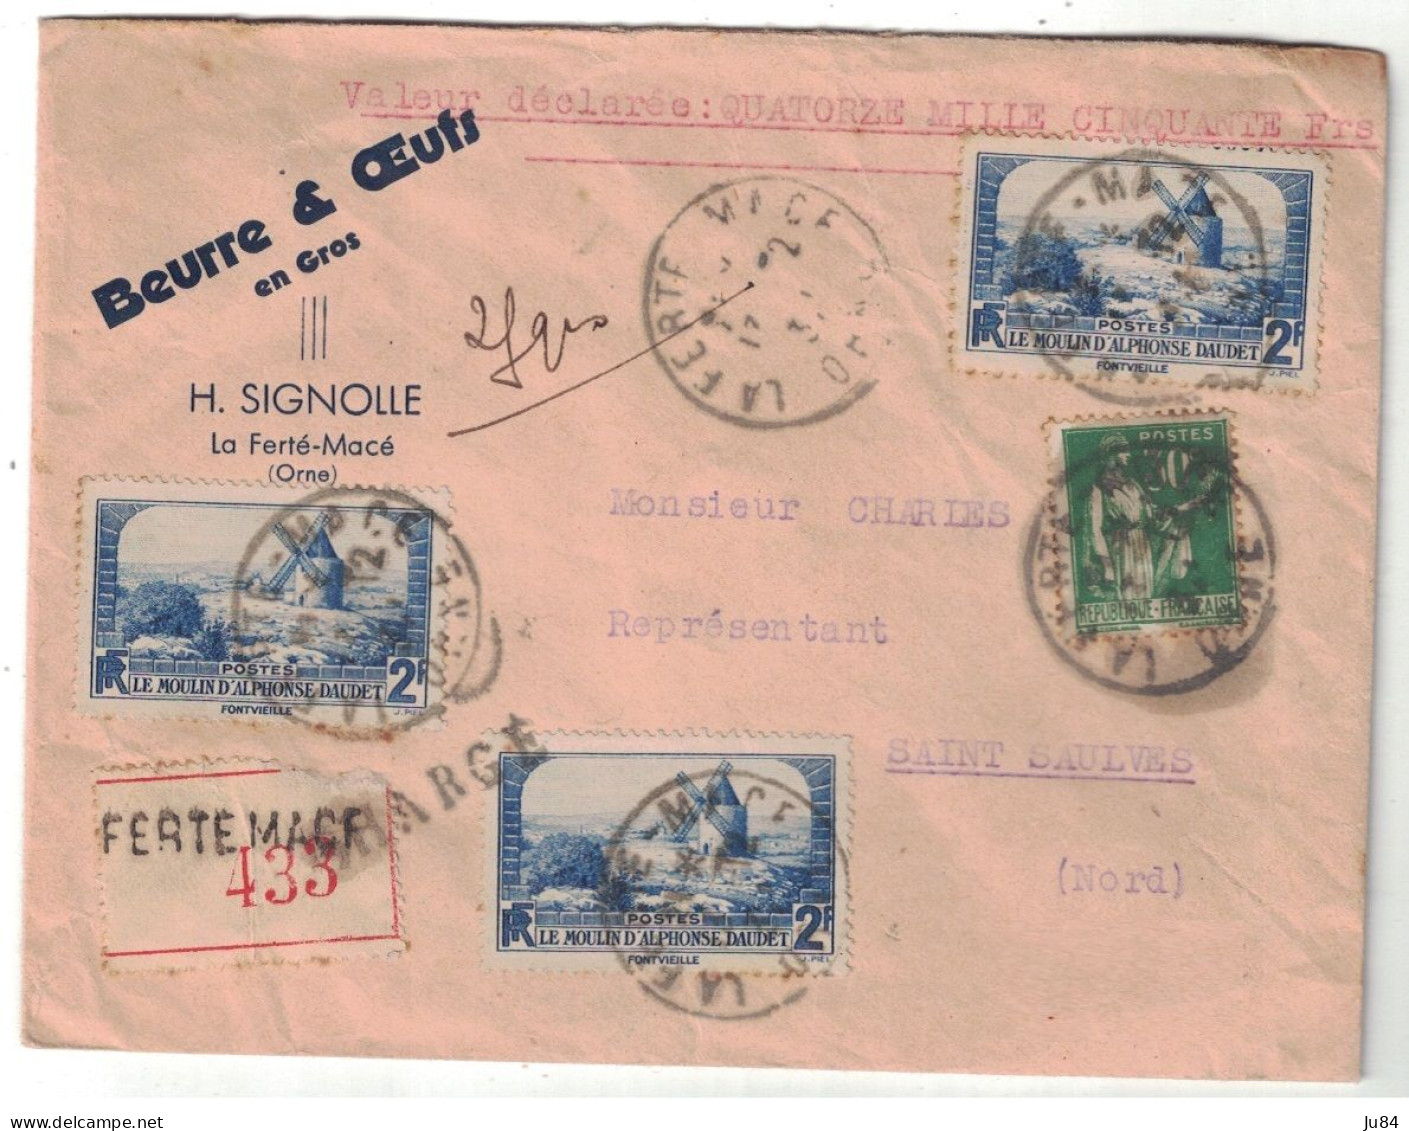 Orne - La Ferté-Macé - Beurre & Oeufs - Valeur Déclarrée - Lettre Recommandée Avec Cachets De Cire Pour Saint Saulves - Tarifs Postaux